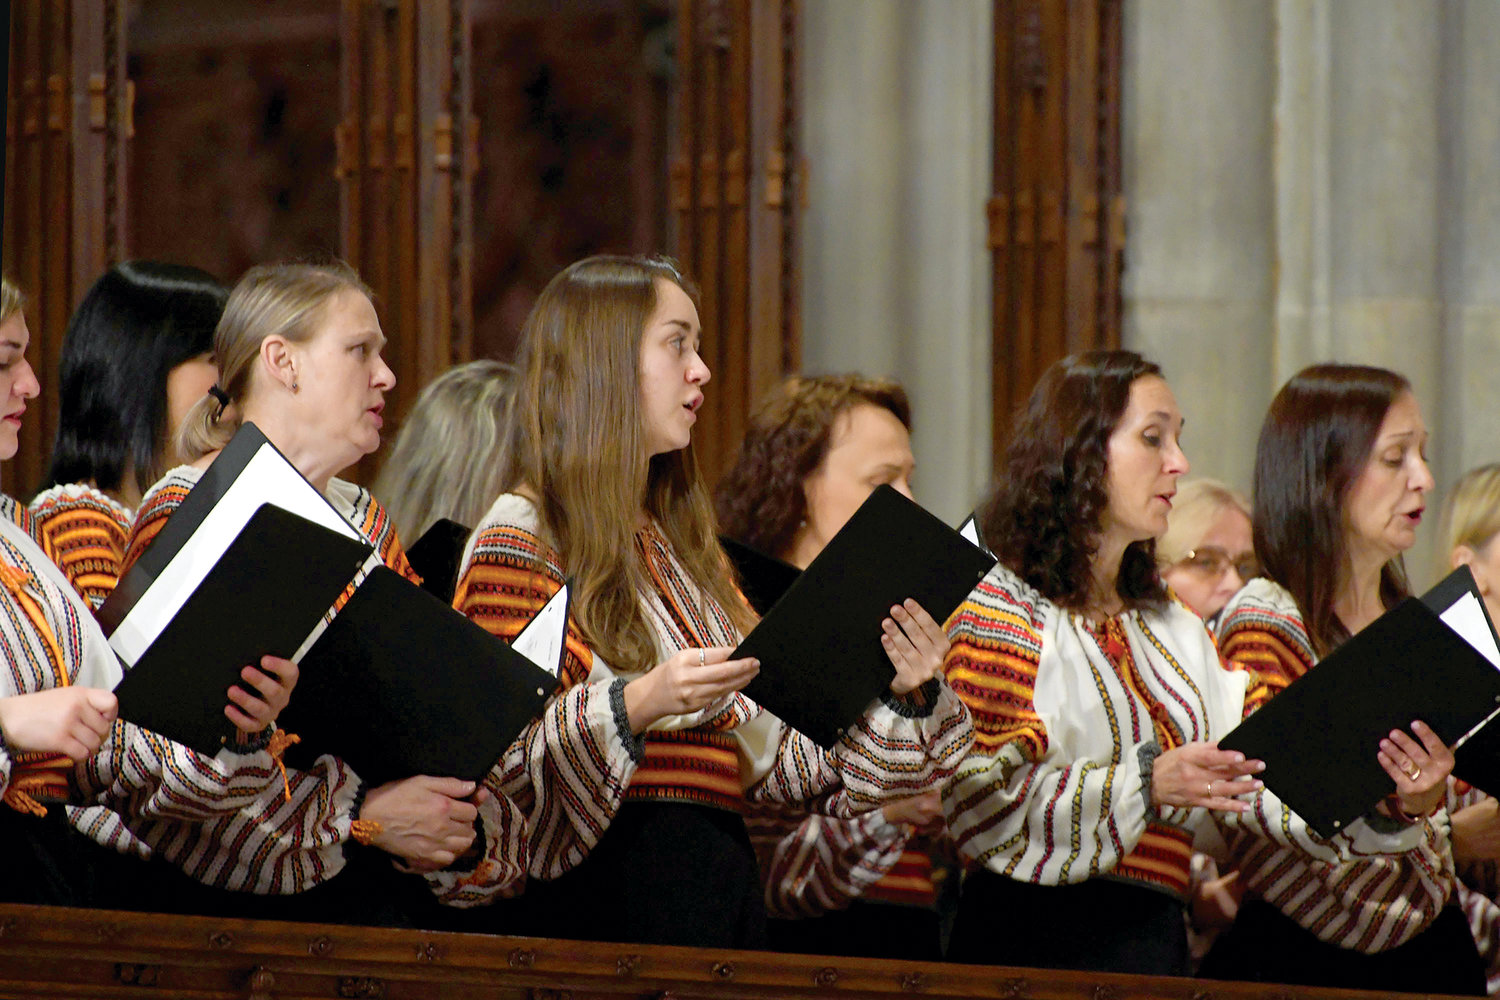 The Ukrainian Chorus Dumka of New York provided music.